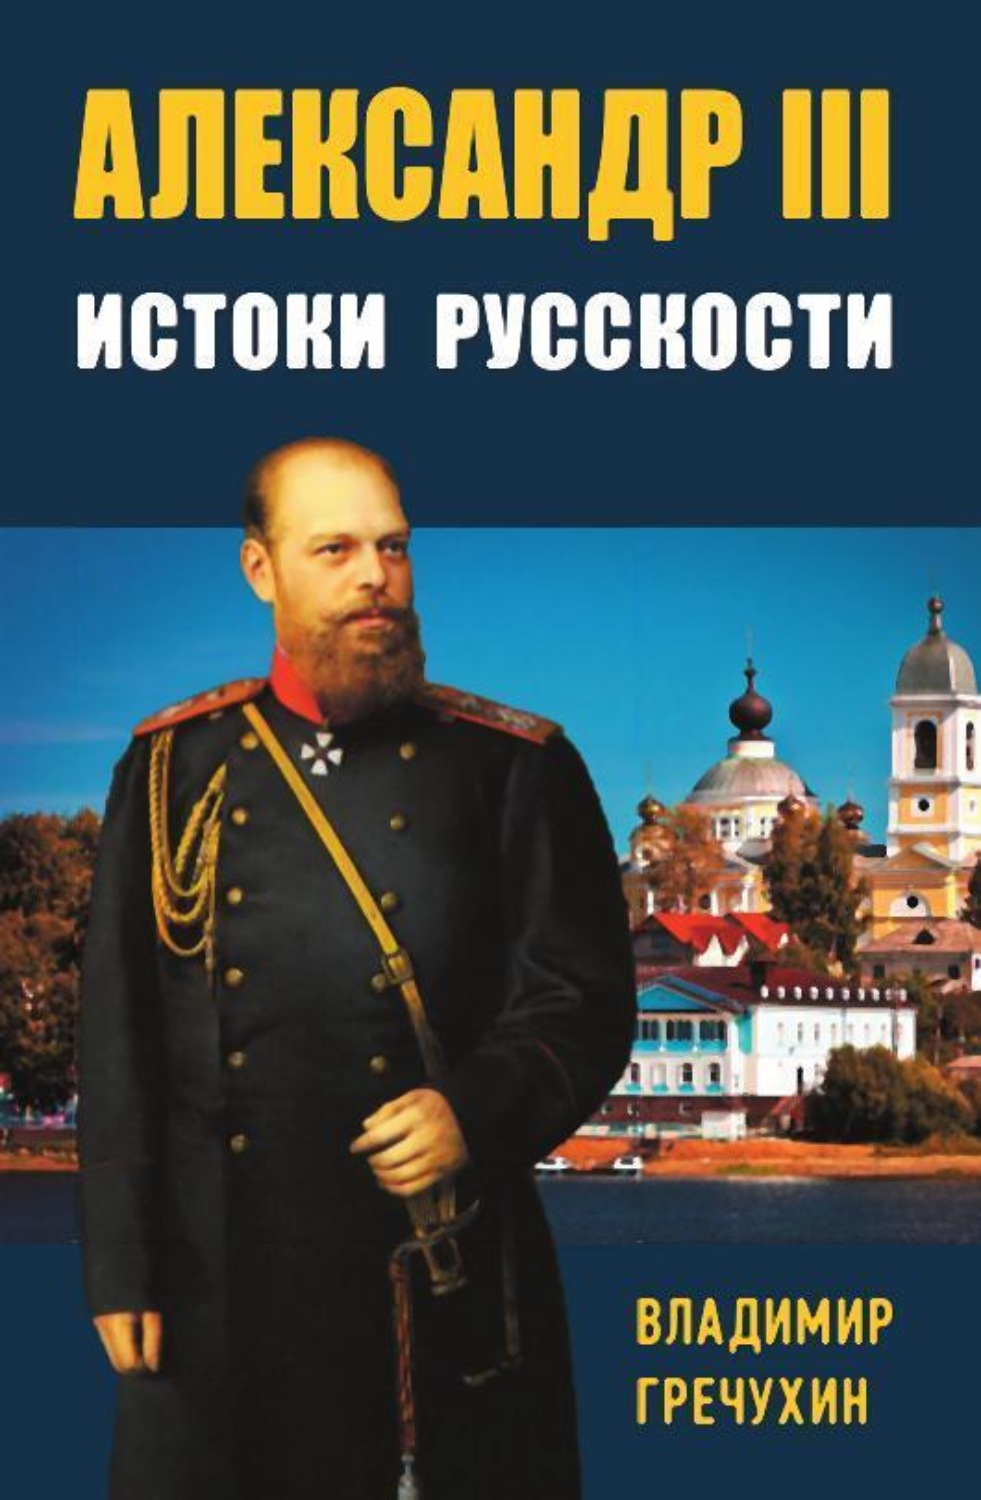 Почему князь Владимир выбрал Православие?